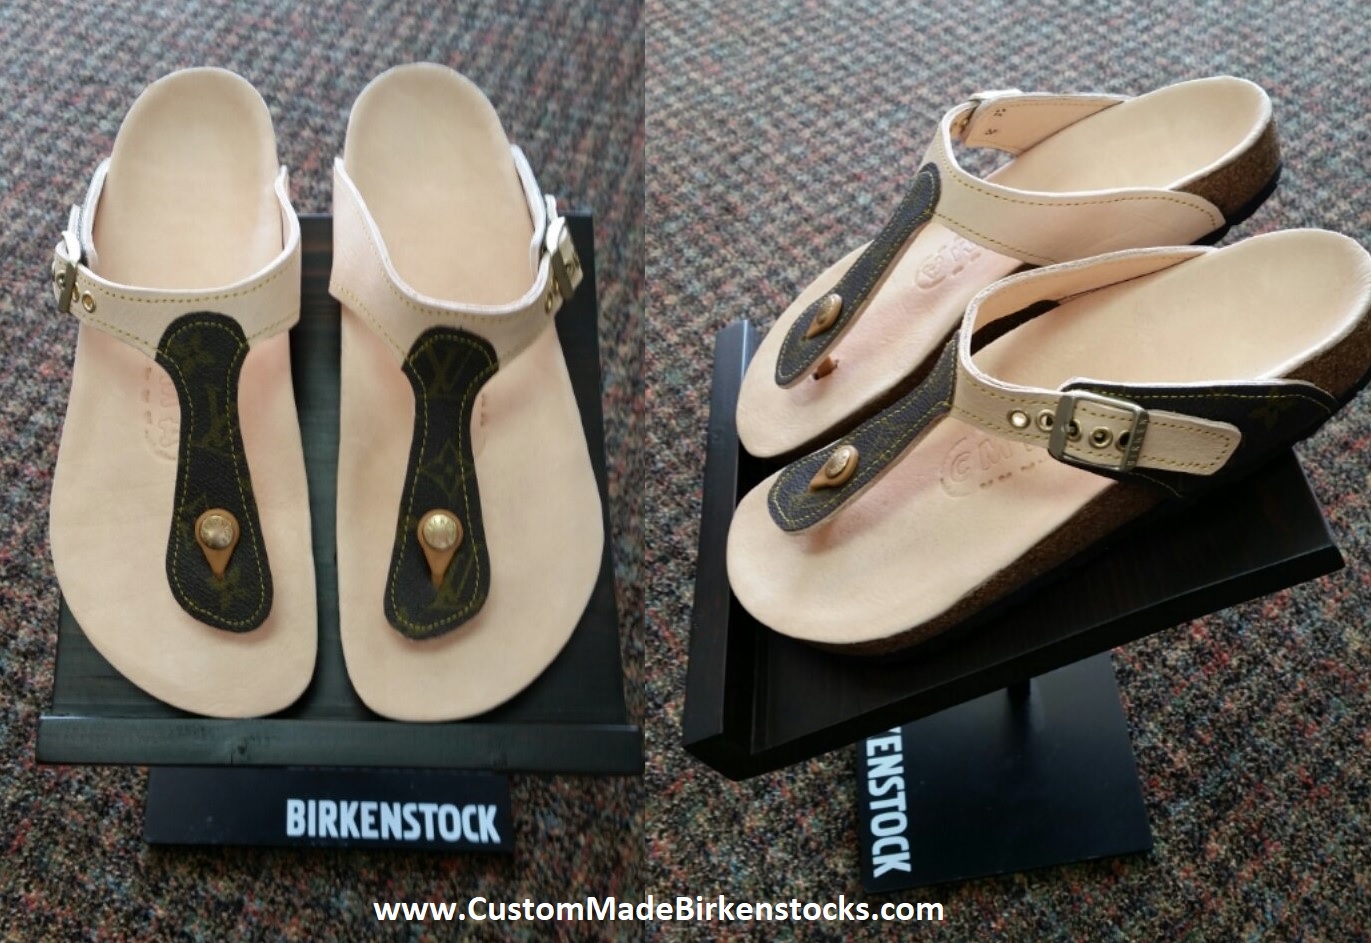 My custom Vibram Birkenstock Bostons : r/Birkenstocks